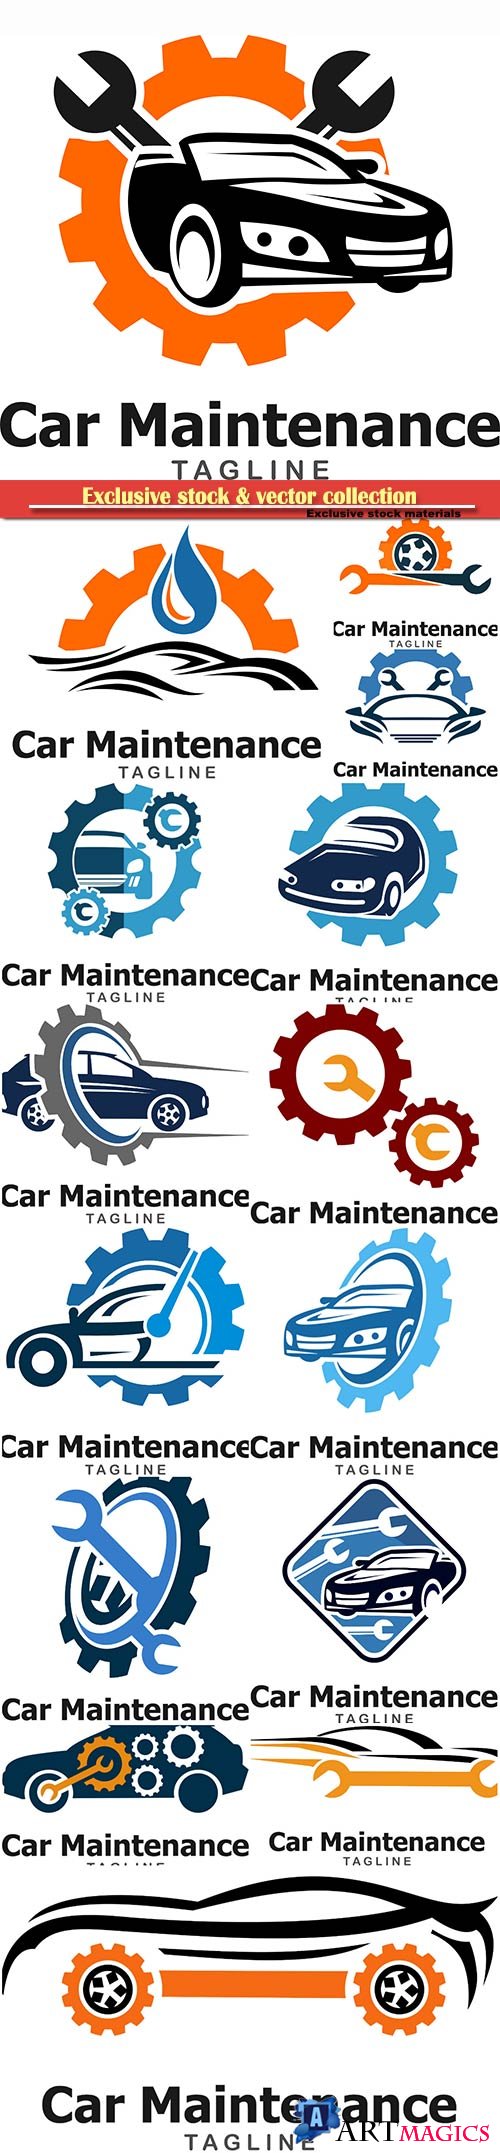 Car maintenance and repair vector logo